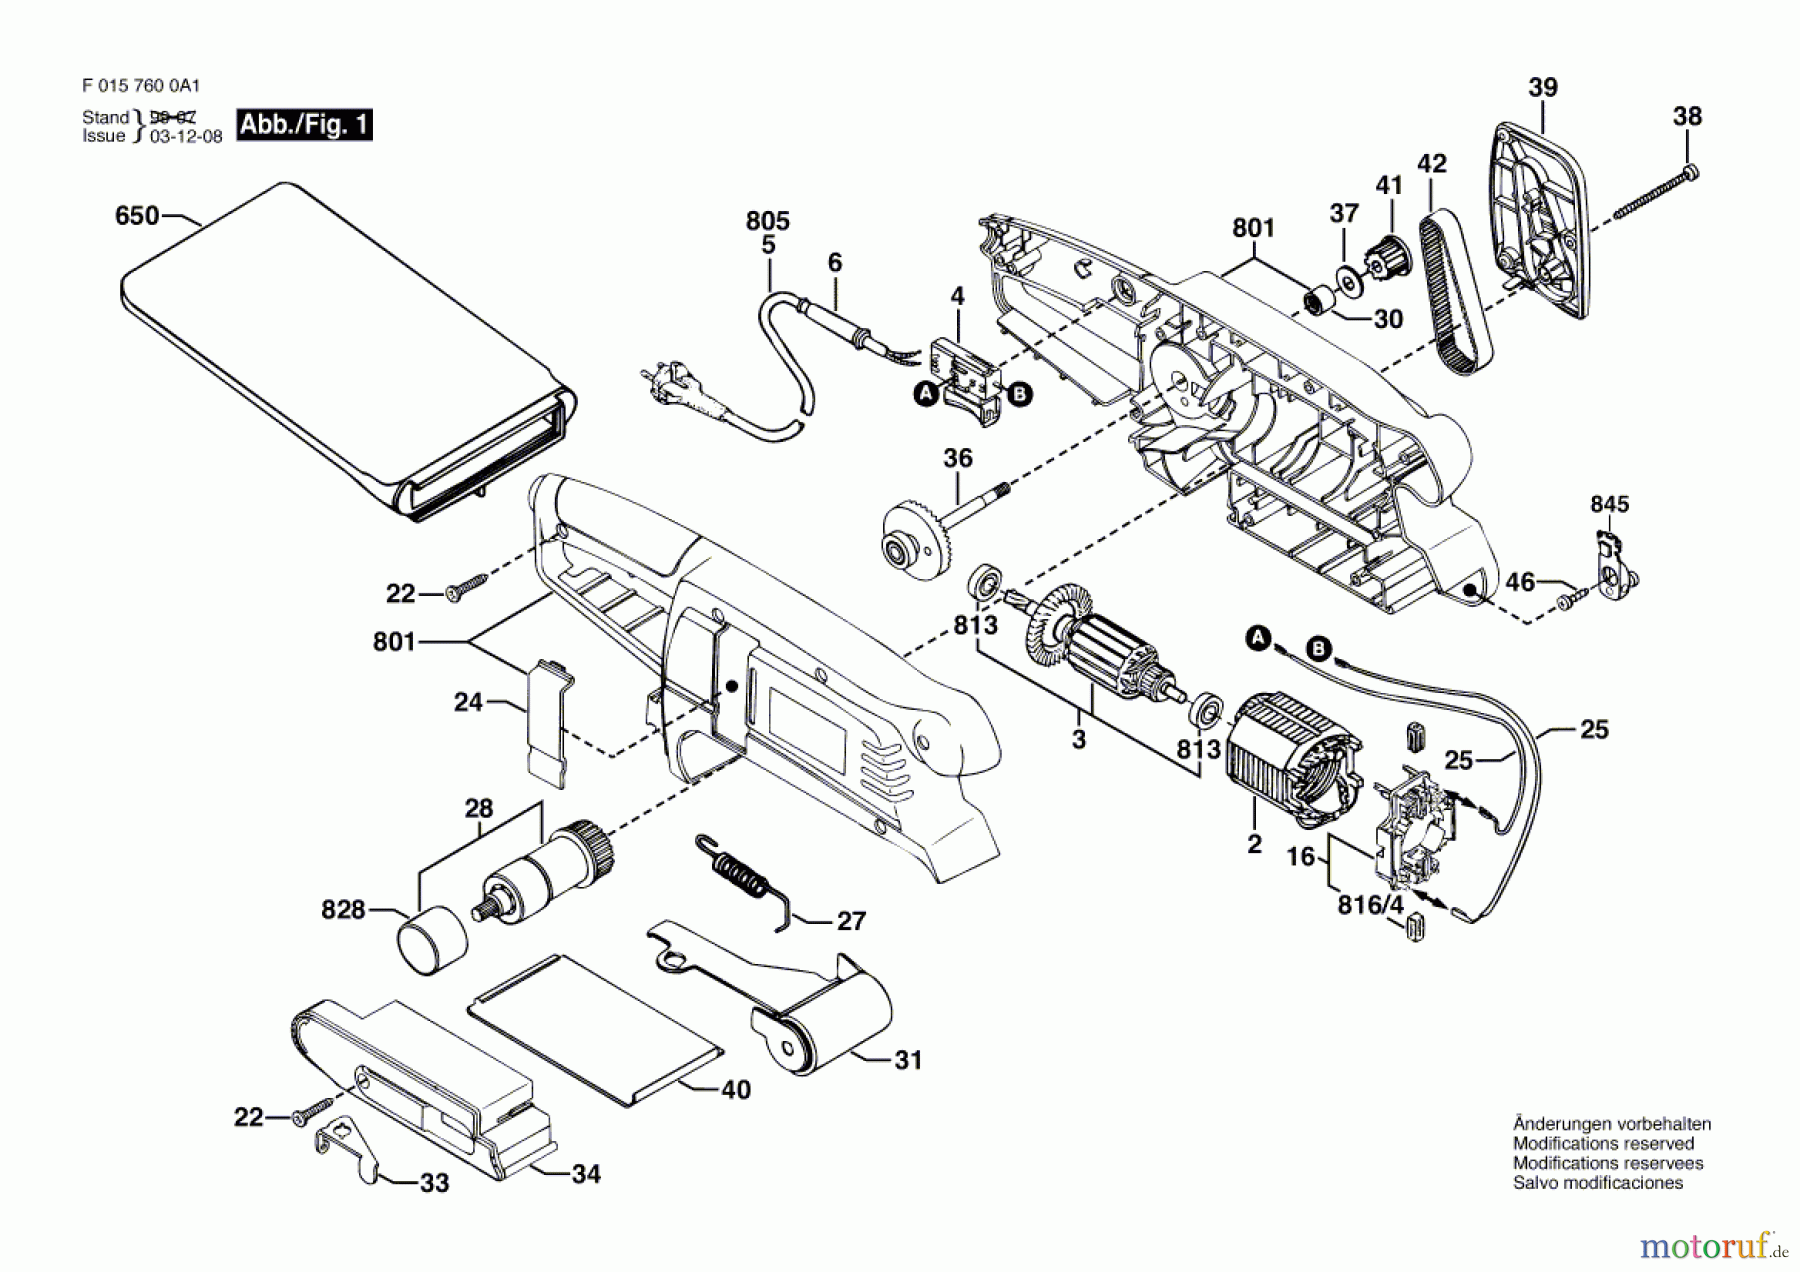  Bosch Werkzeug Bandschleifer 7600 Seite 1